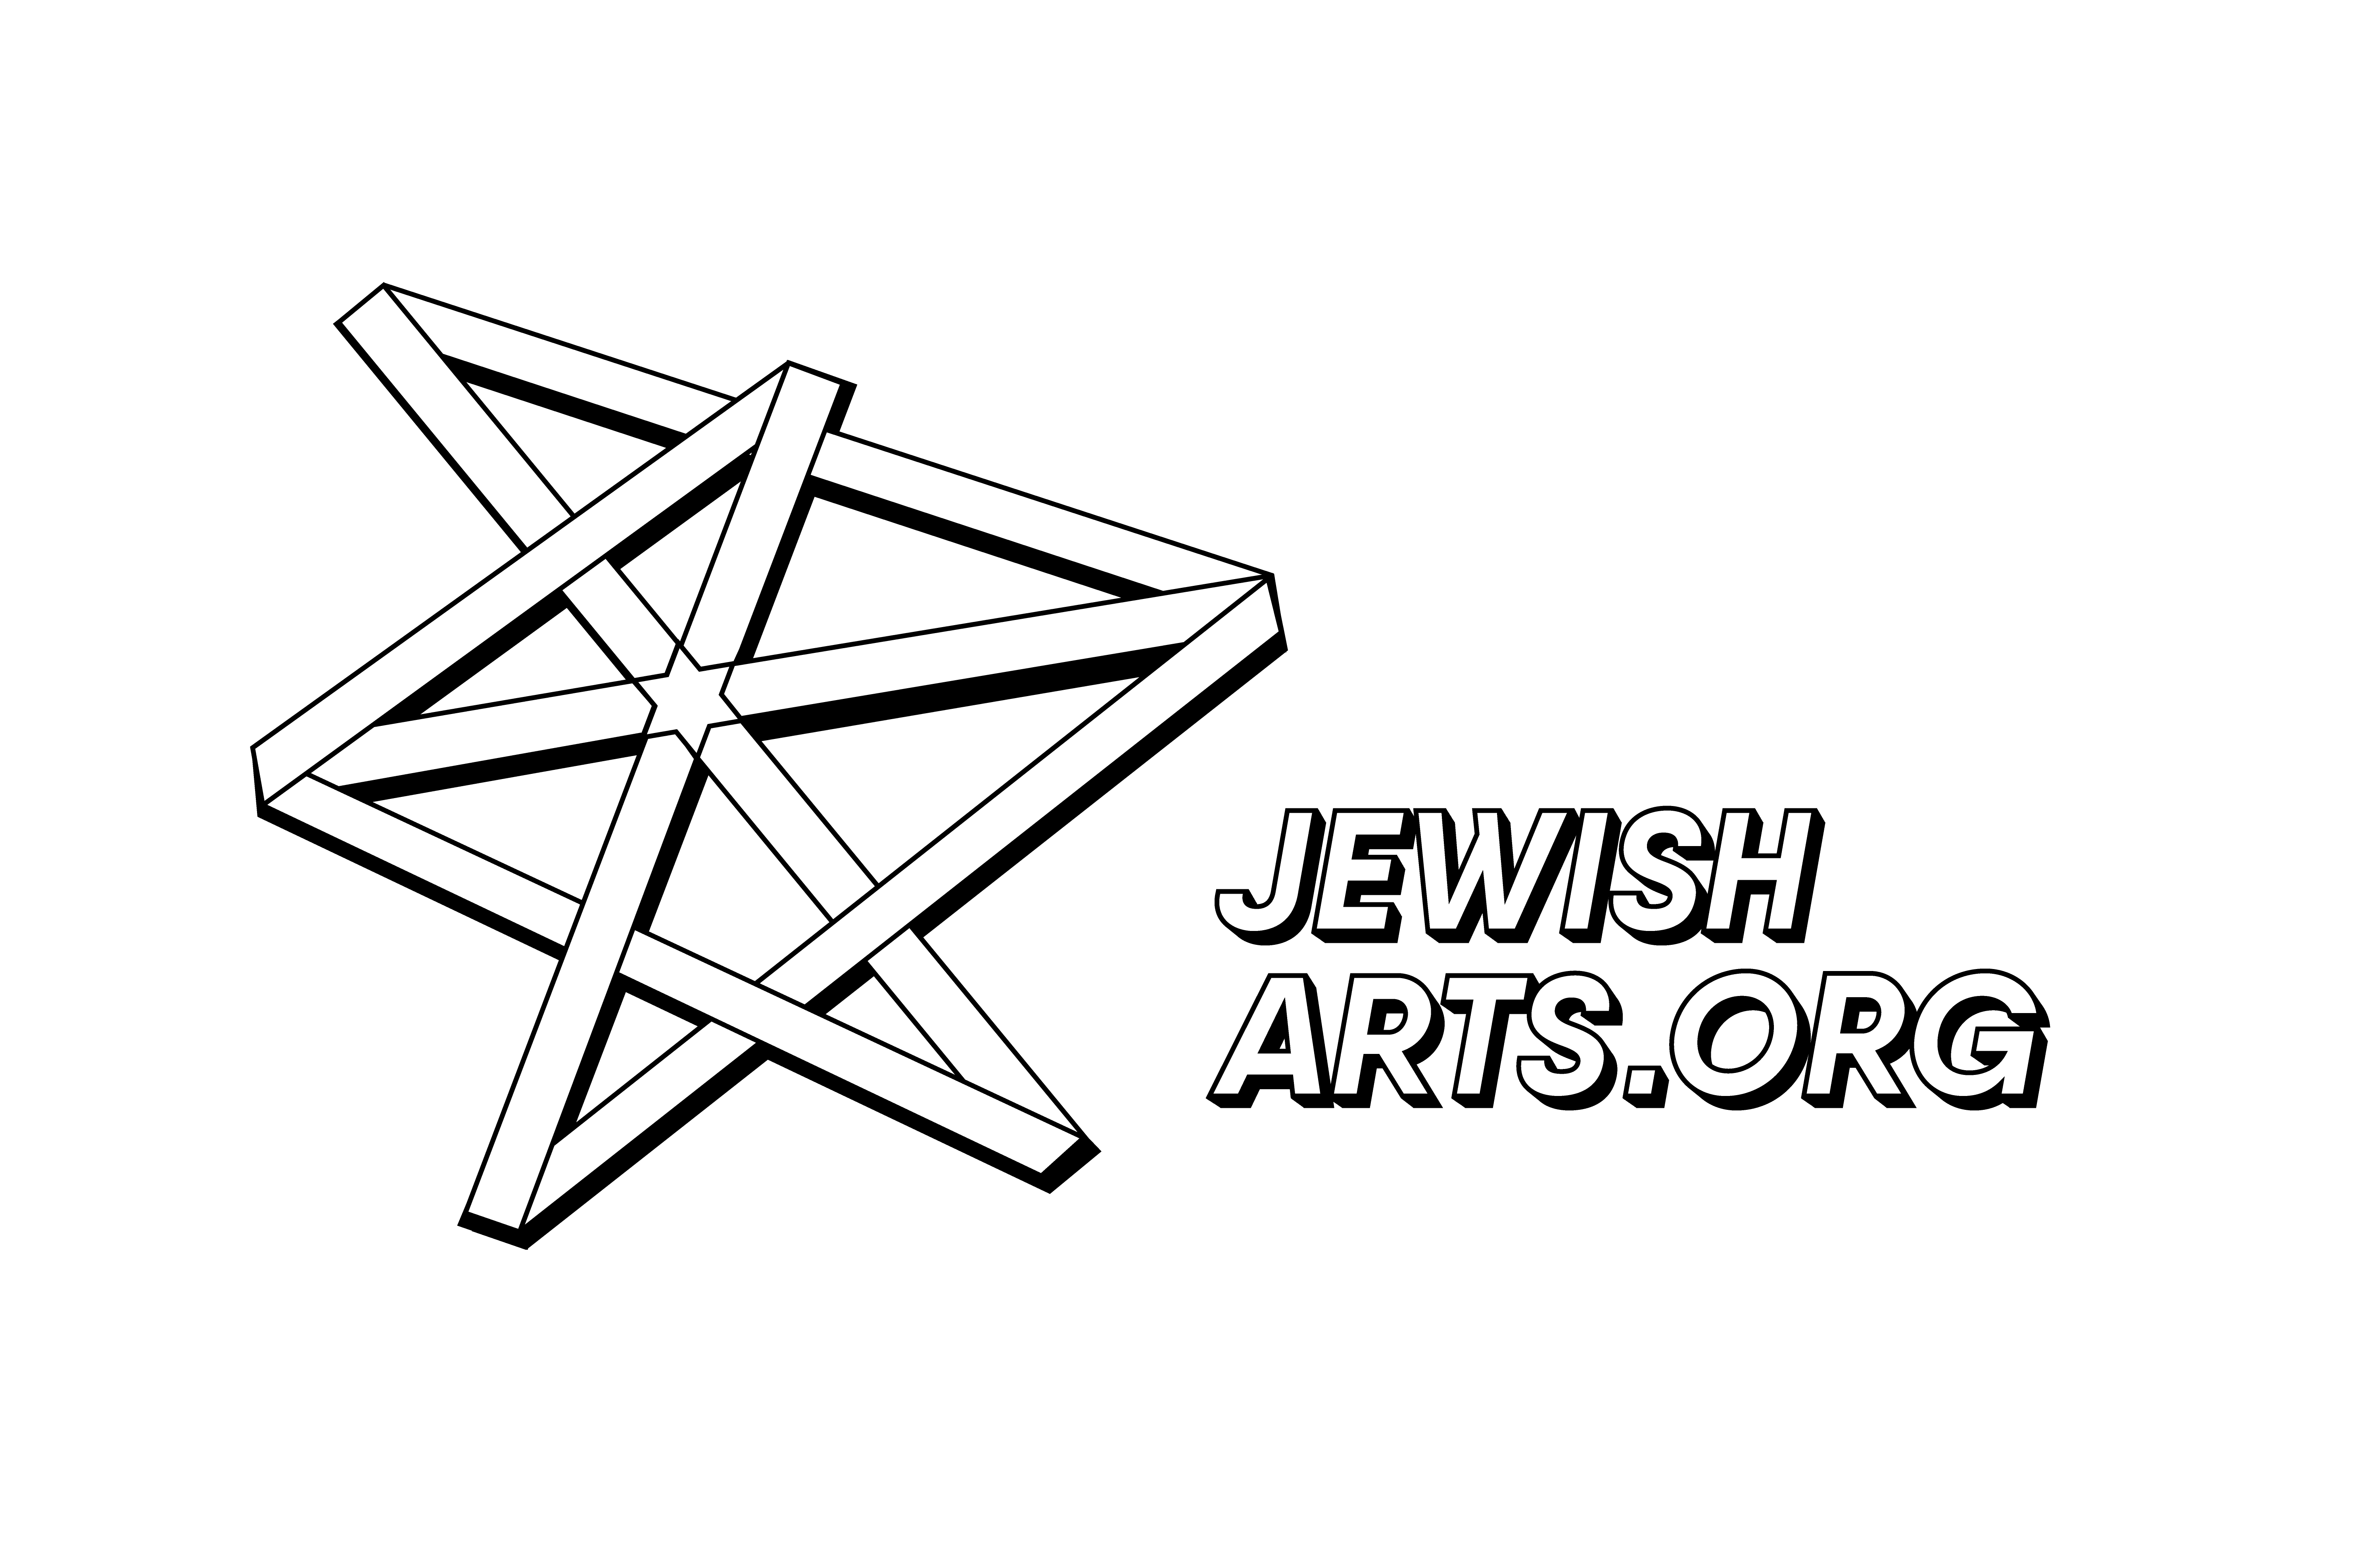 JewishArts.org